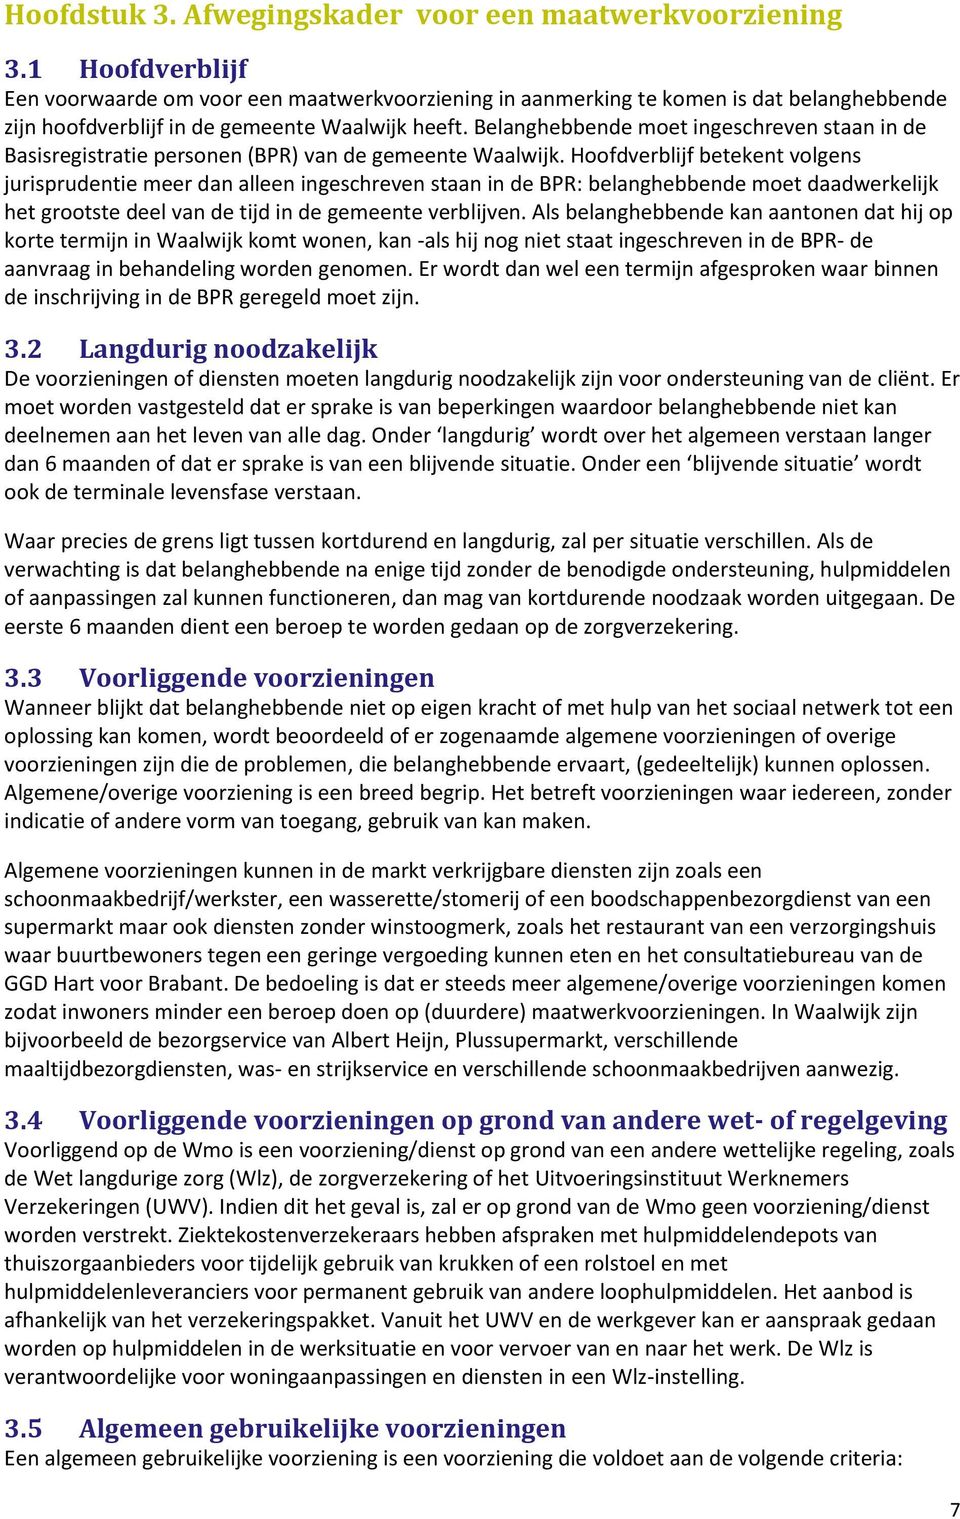 Belanghebbende moet ingeschreven staan in de Basisregistratie personen (BPR) van de gemeente Waalwijk.